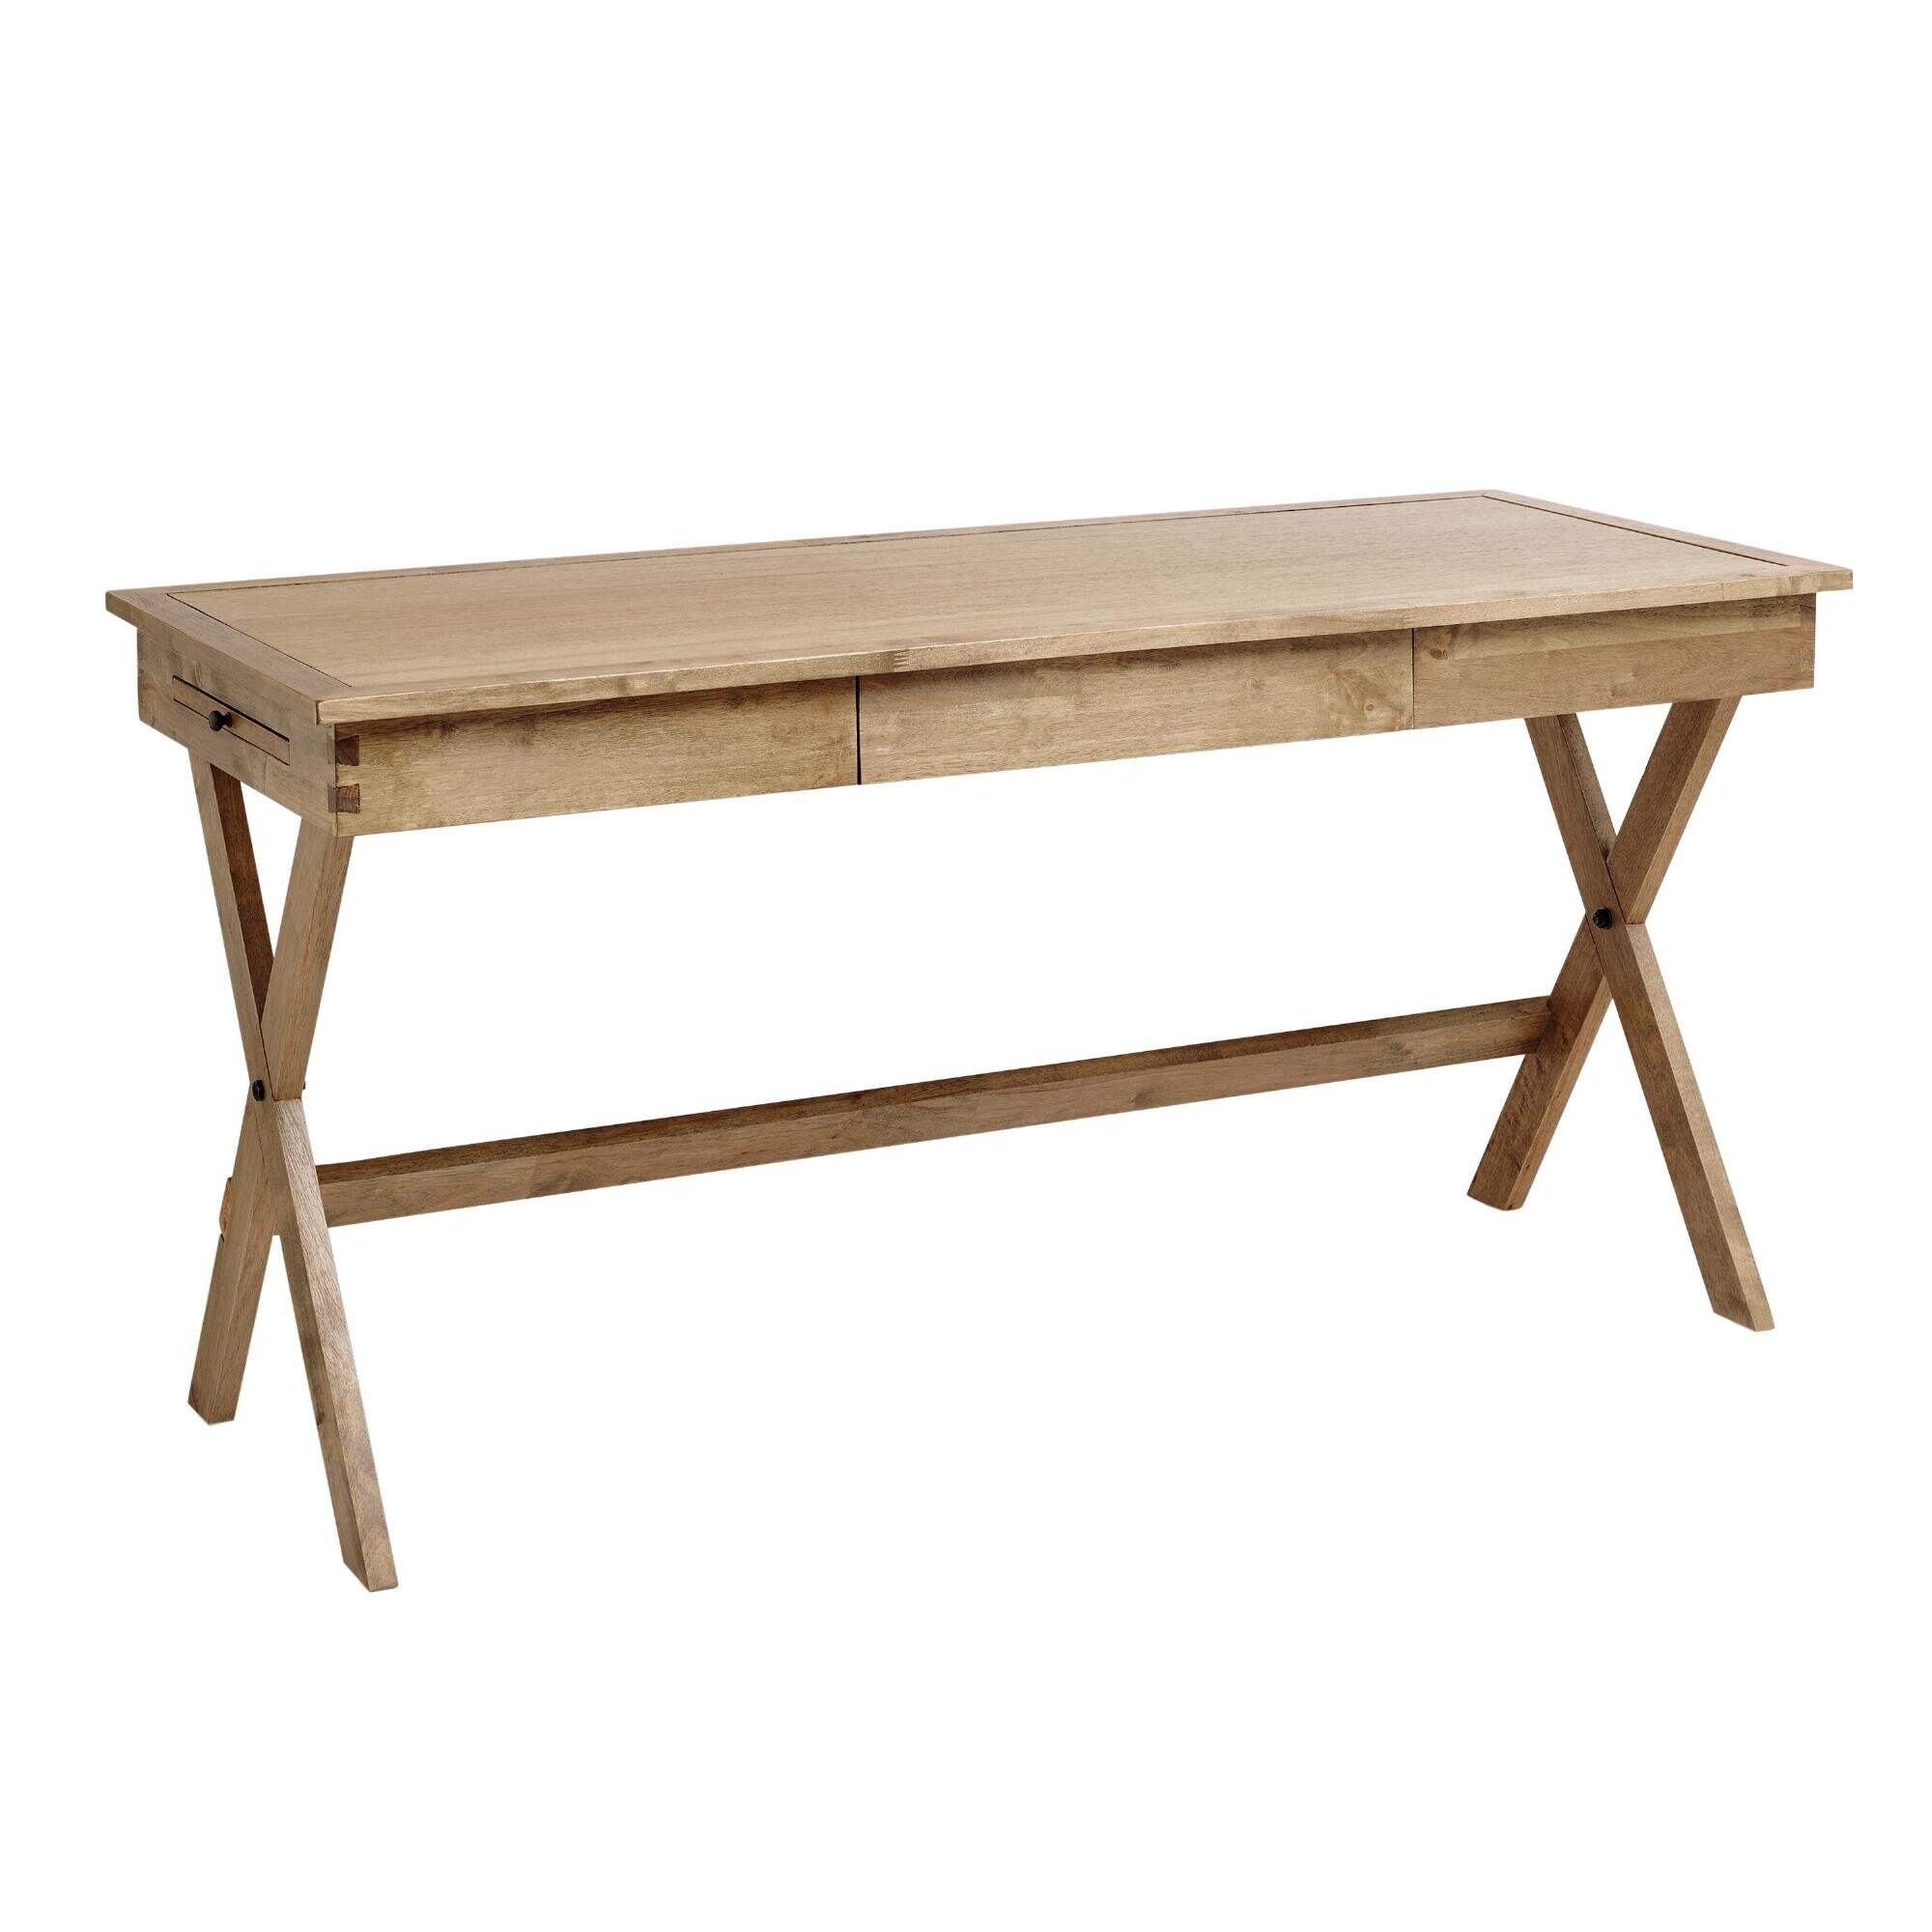 World Market - Natural Wood Campaign Desk - $299.99